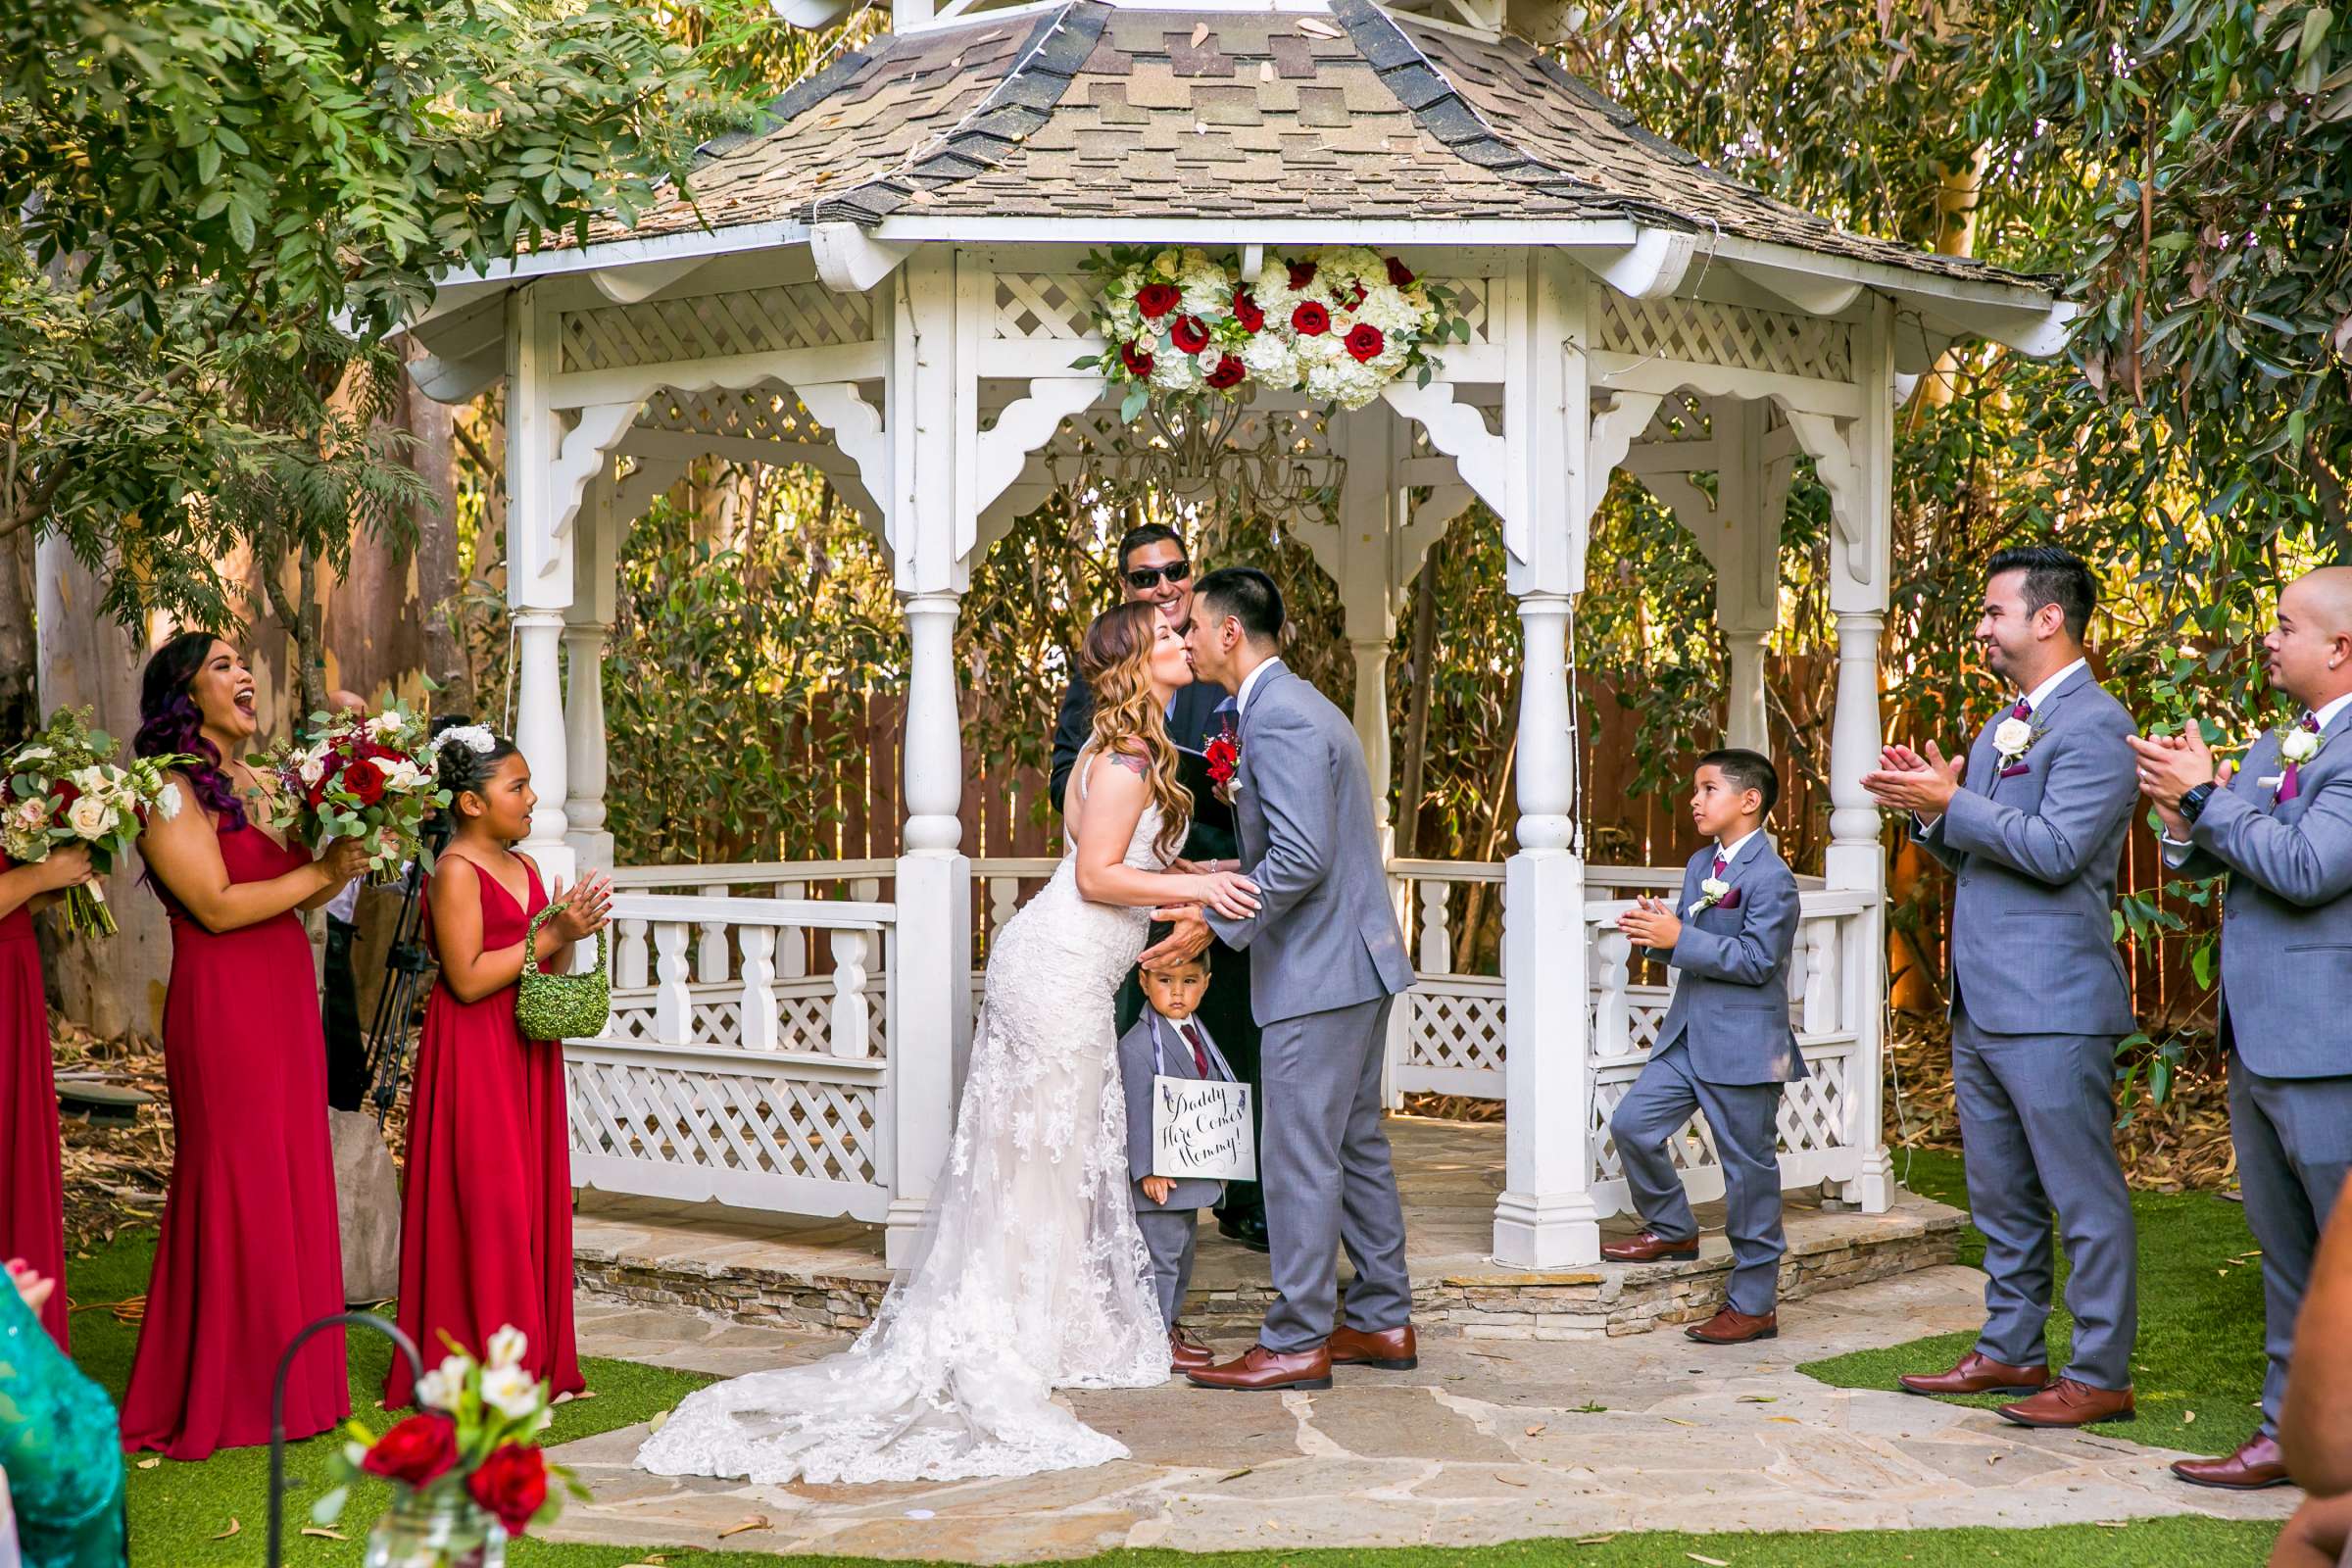 Twin Oaks House & Gardens Wedding Estate Wedding, Merrilynn and Trey Wedding Photo #84 by True Photography